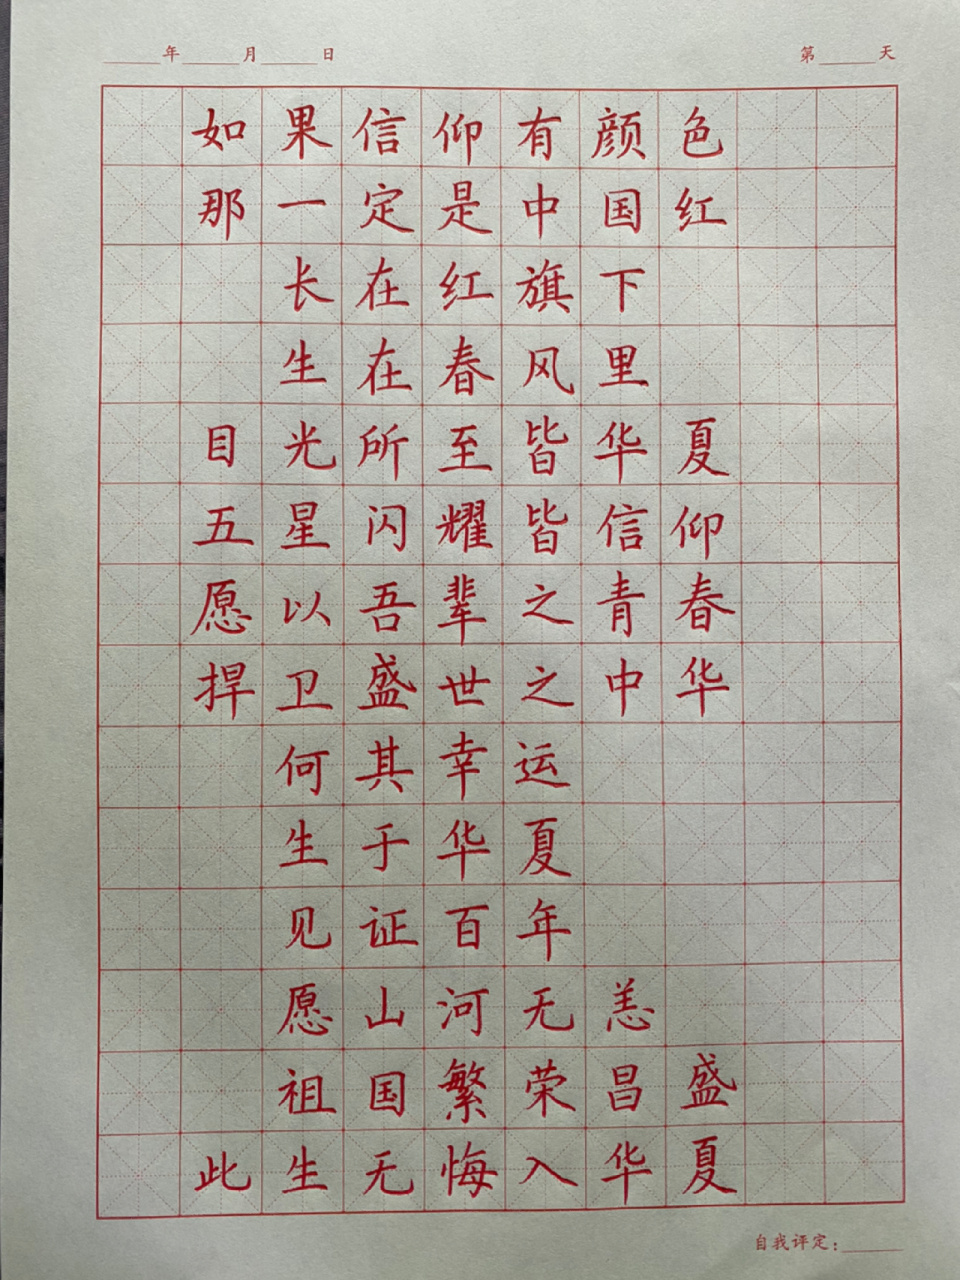 爱国主题硬笔书法分享 如果信仰有颜色,那一定是中国红